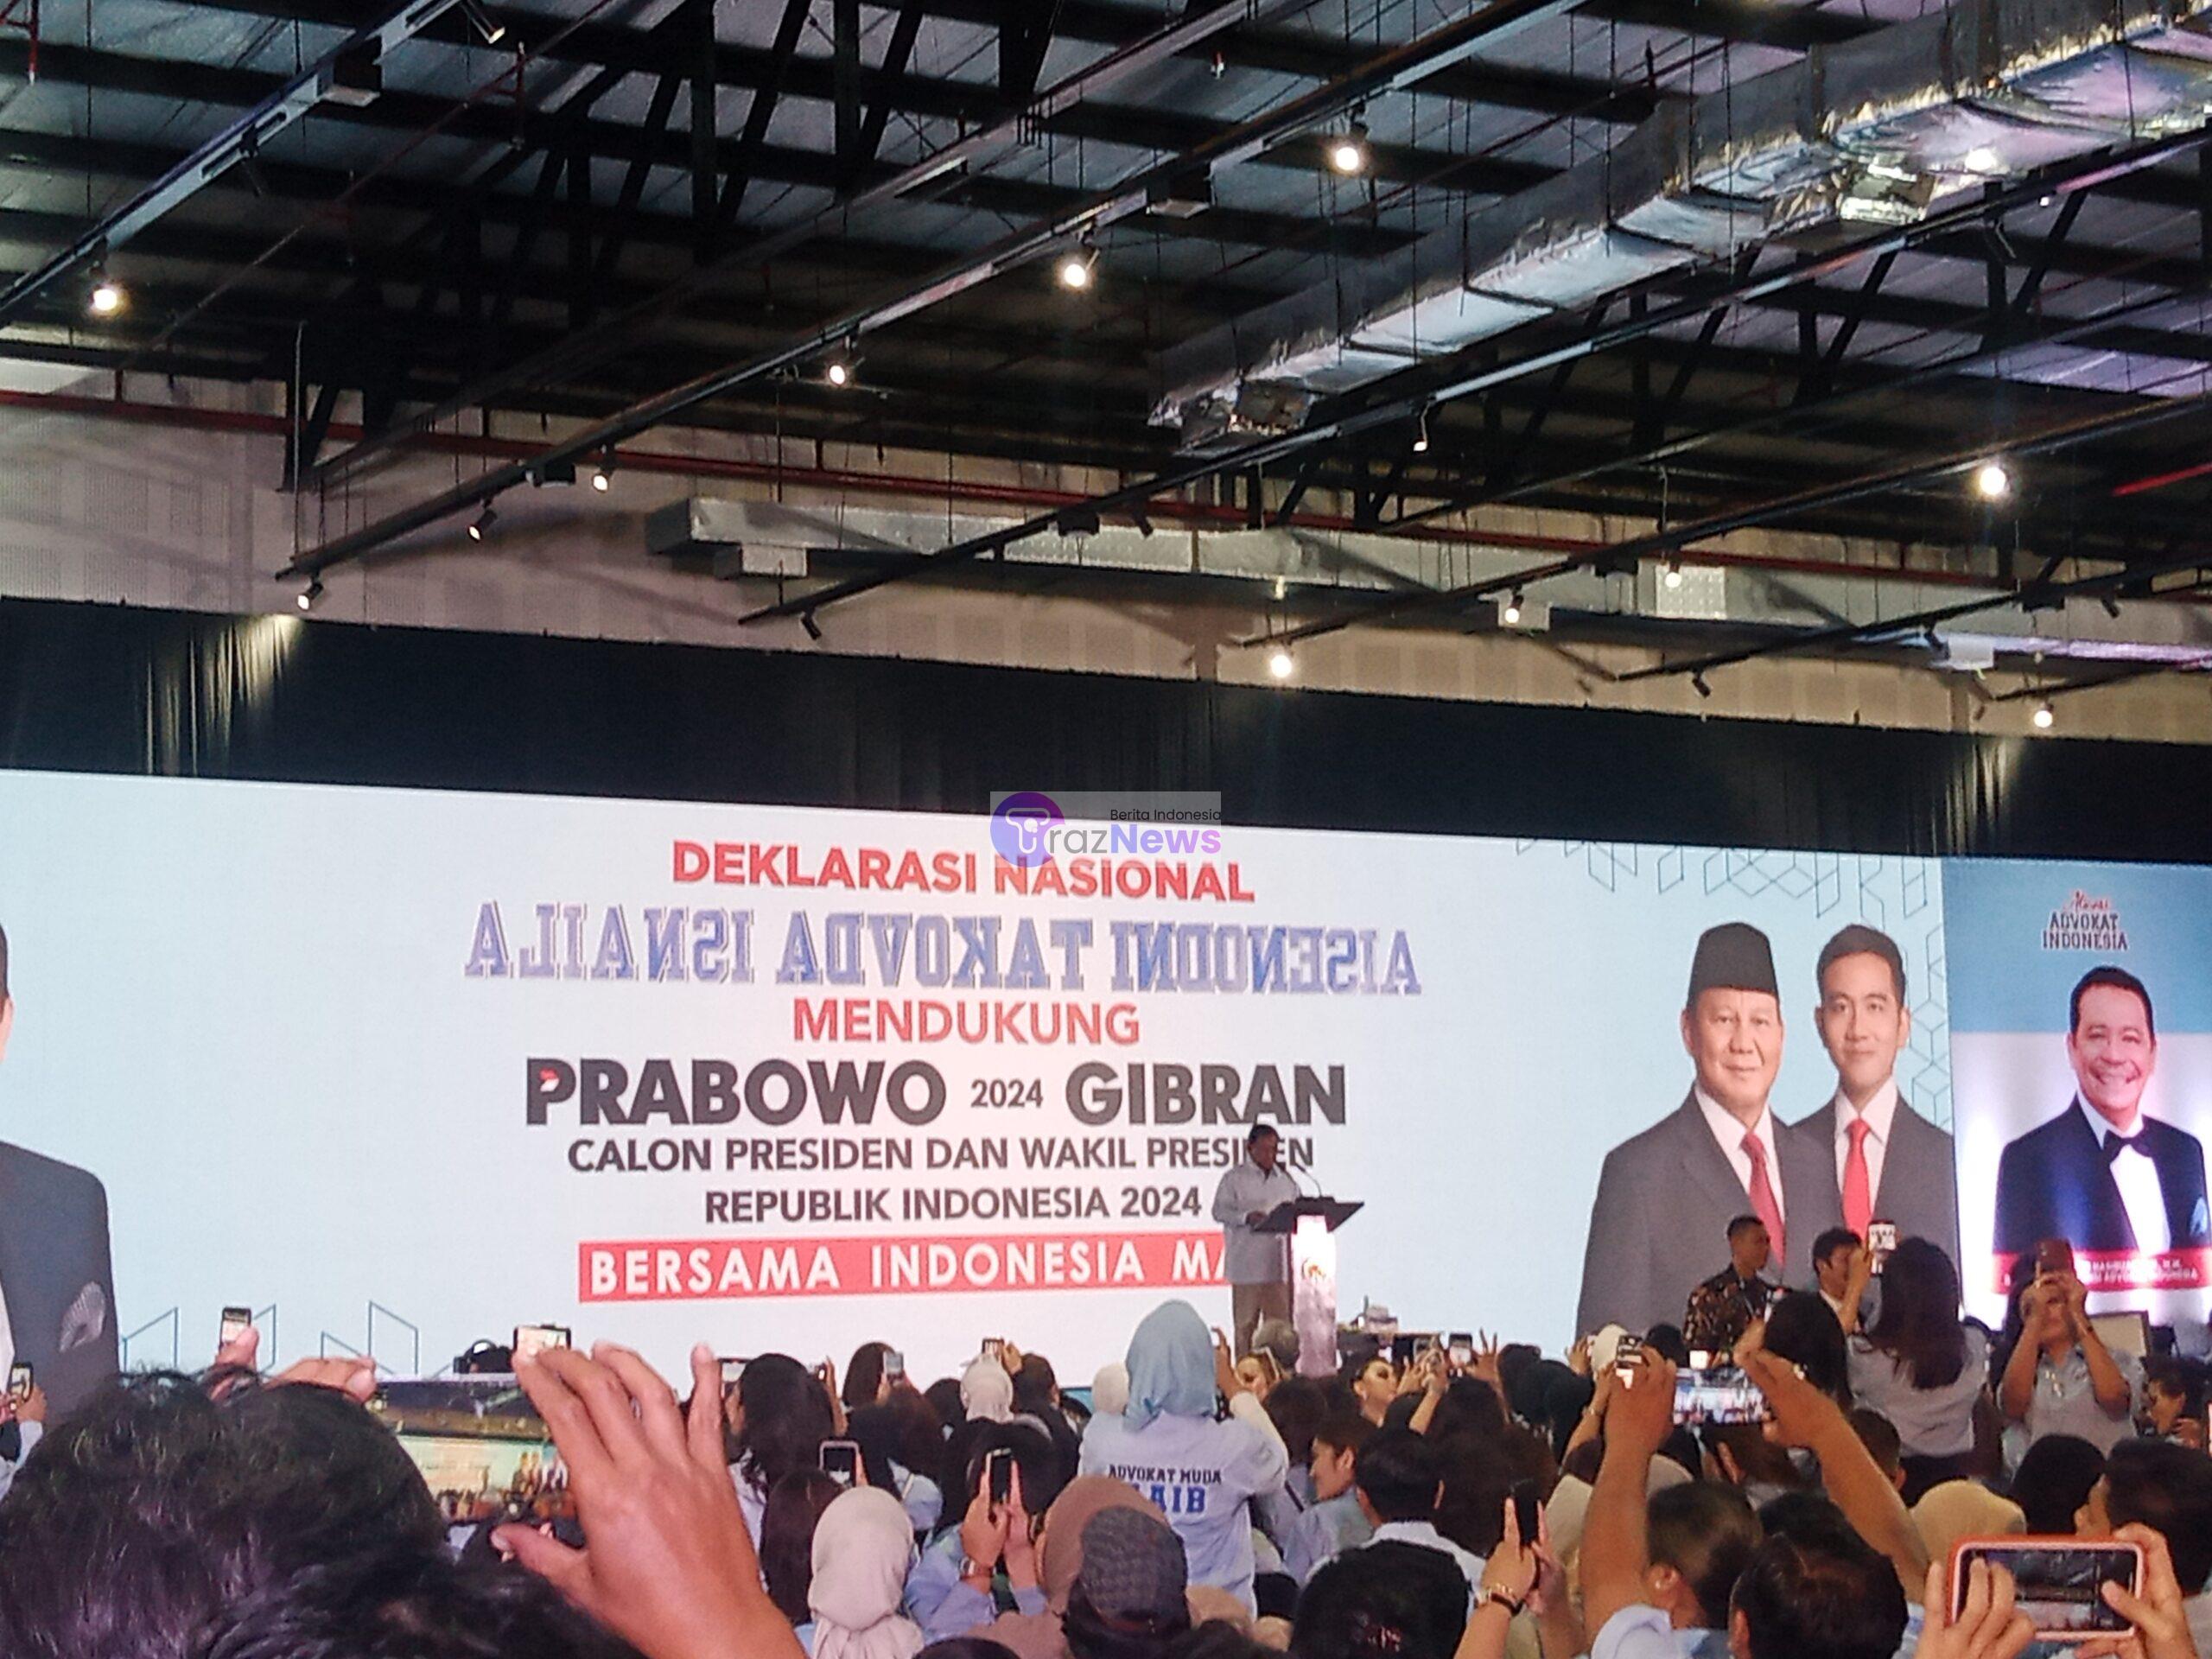 Deklarasi Aliansi Advokat Indonesia Bersatu Dukung Paslon 02 Prabowo Gibran 